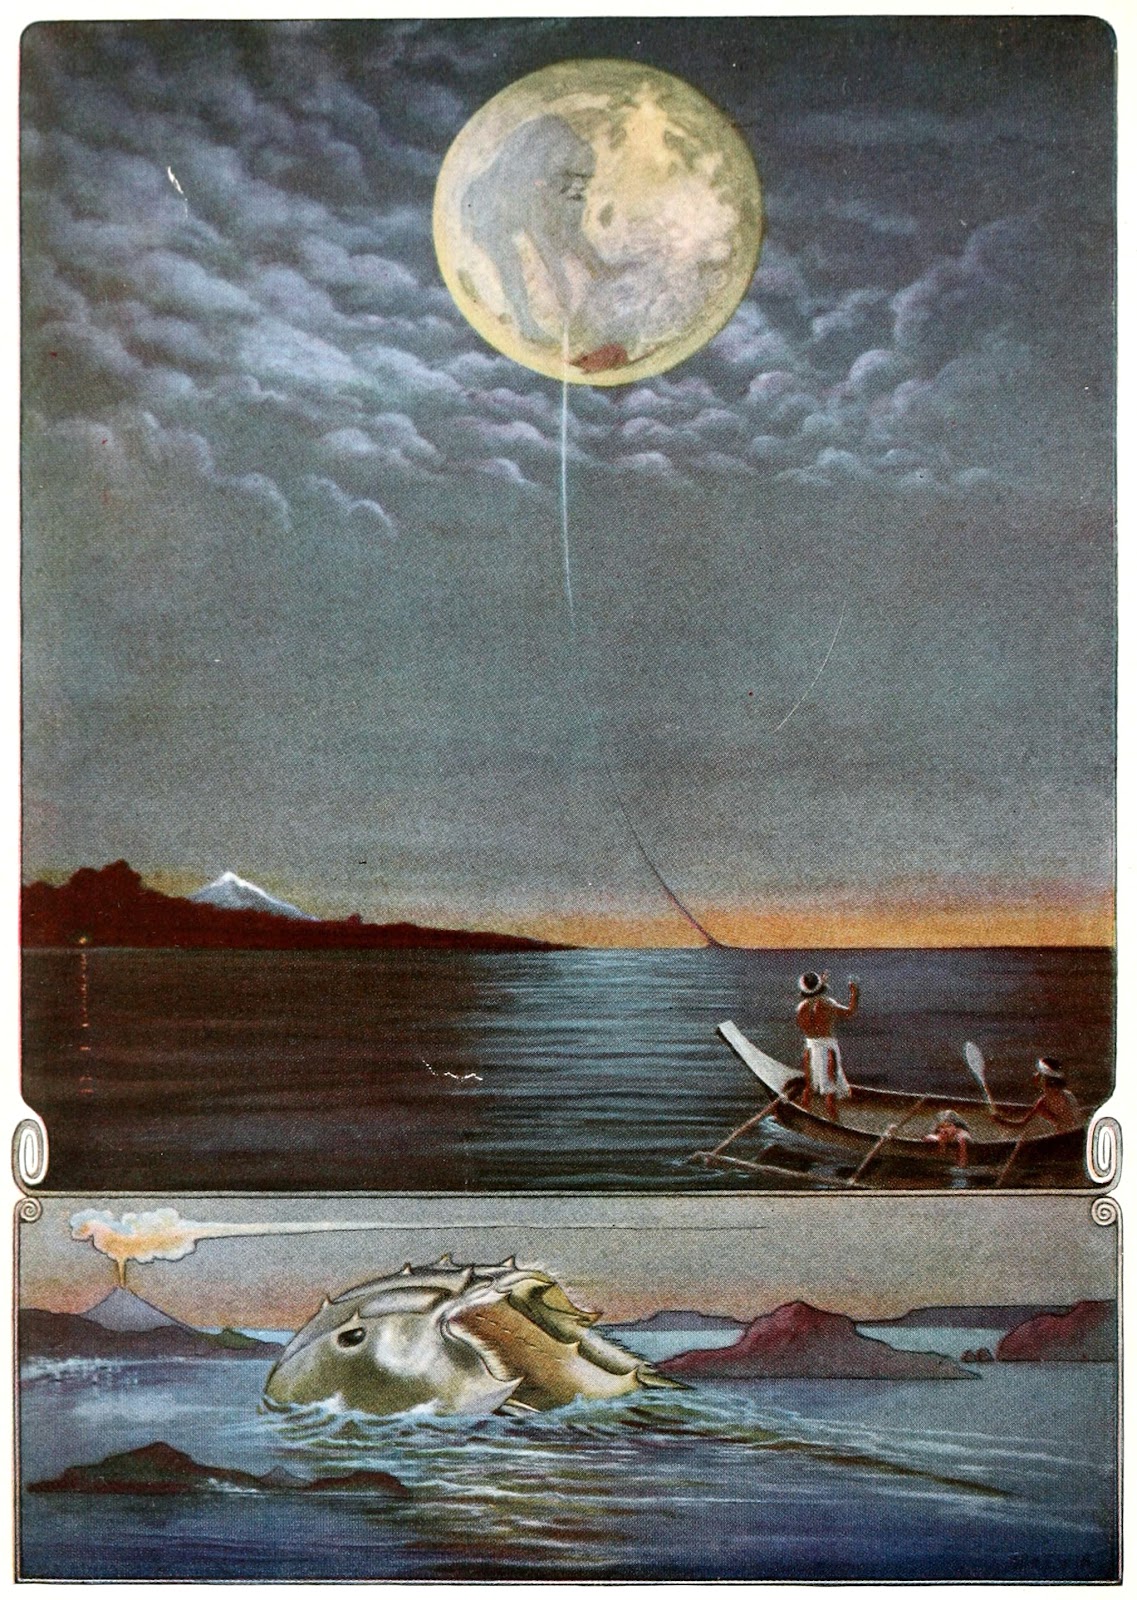 ラドヤード・キップリングの『海で遊んだ蟹』の表紙：満月が出ている夜の海に古老の魔術師と男性と少女が乗ったカヌーが浮かんだ大きな絵の下にパウ・アマが少しだけ姿を現した海面の小さな絵がある